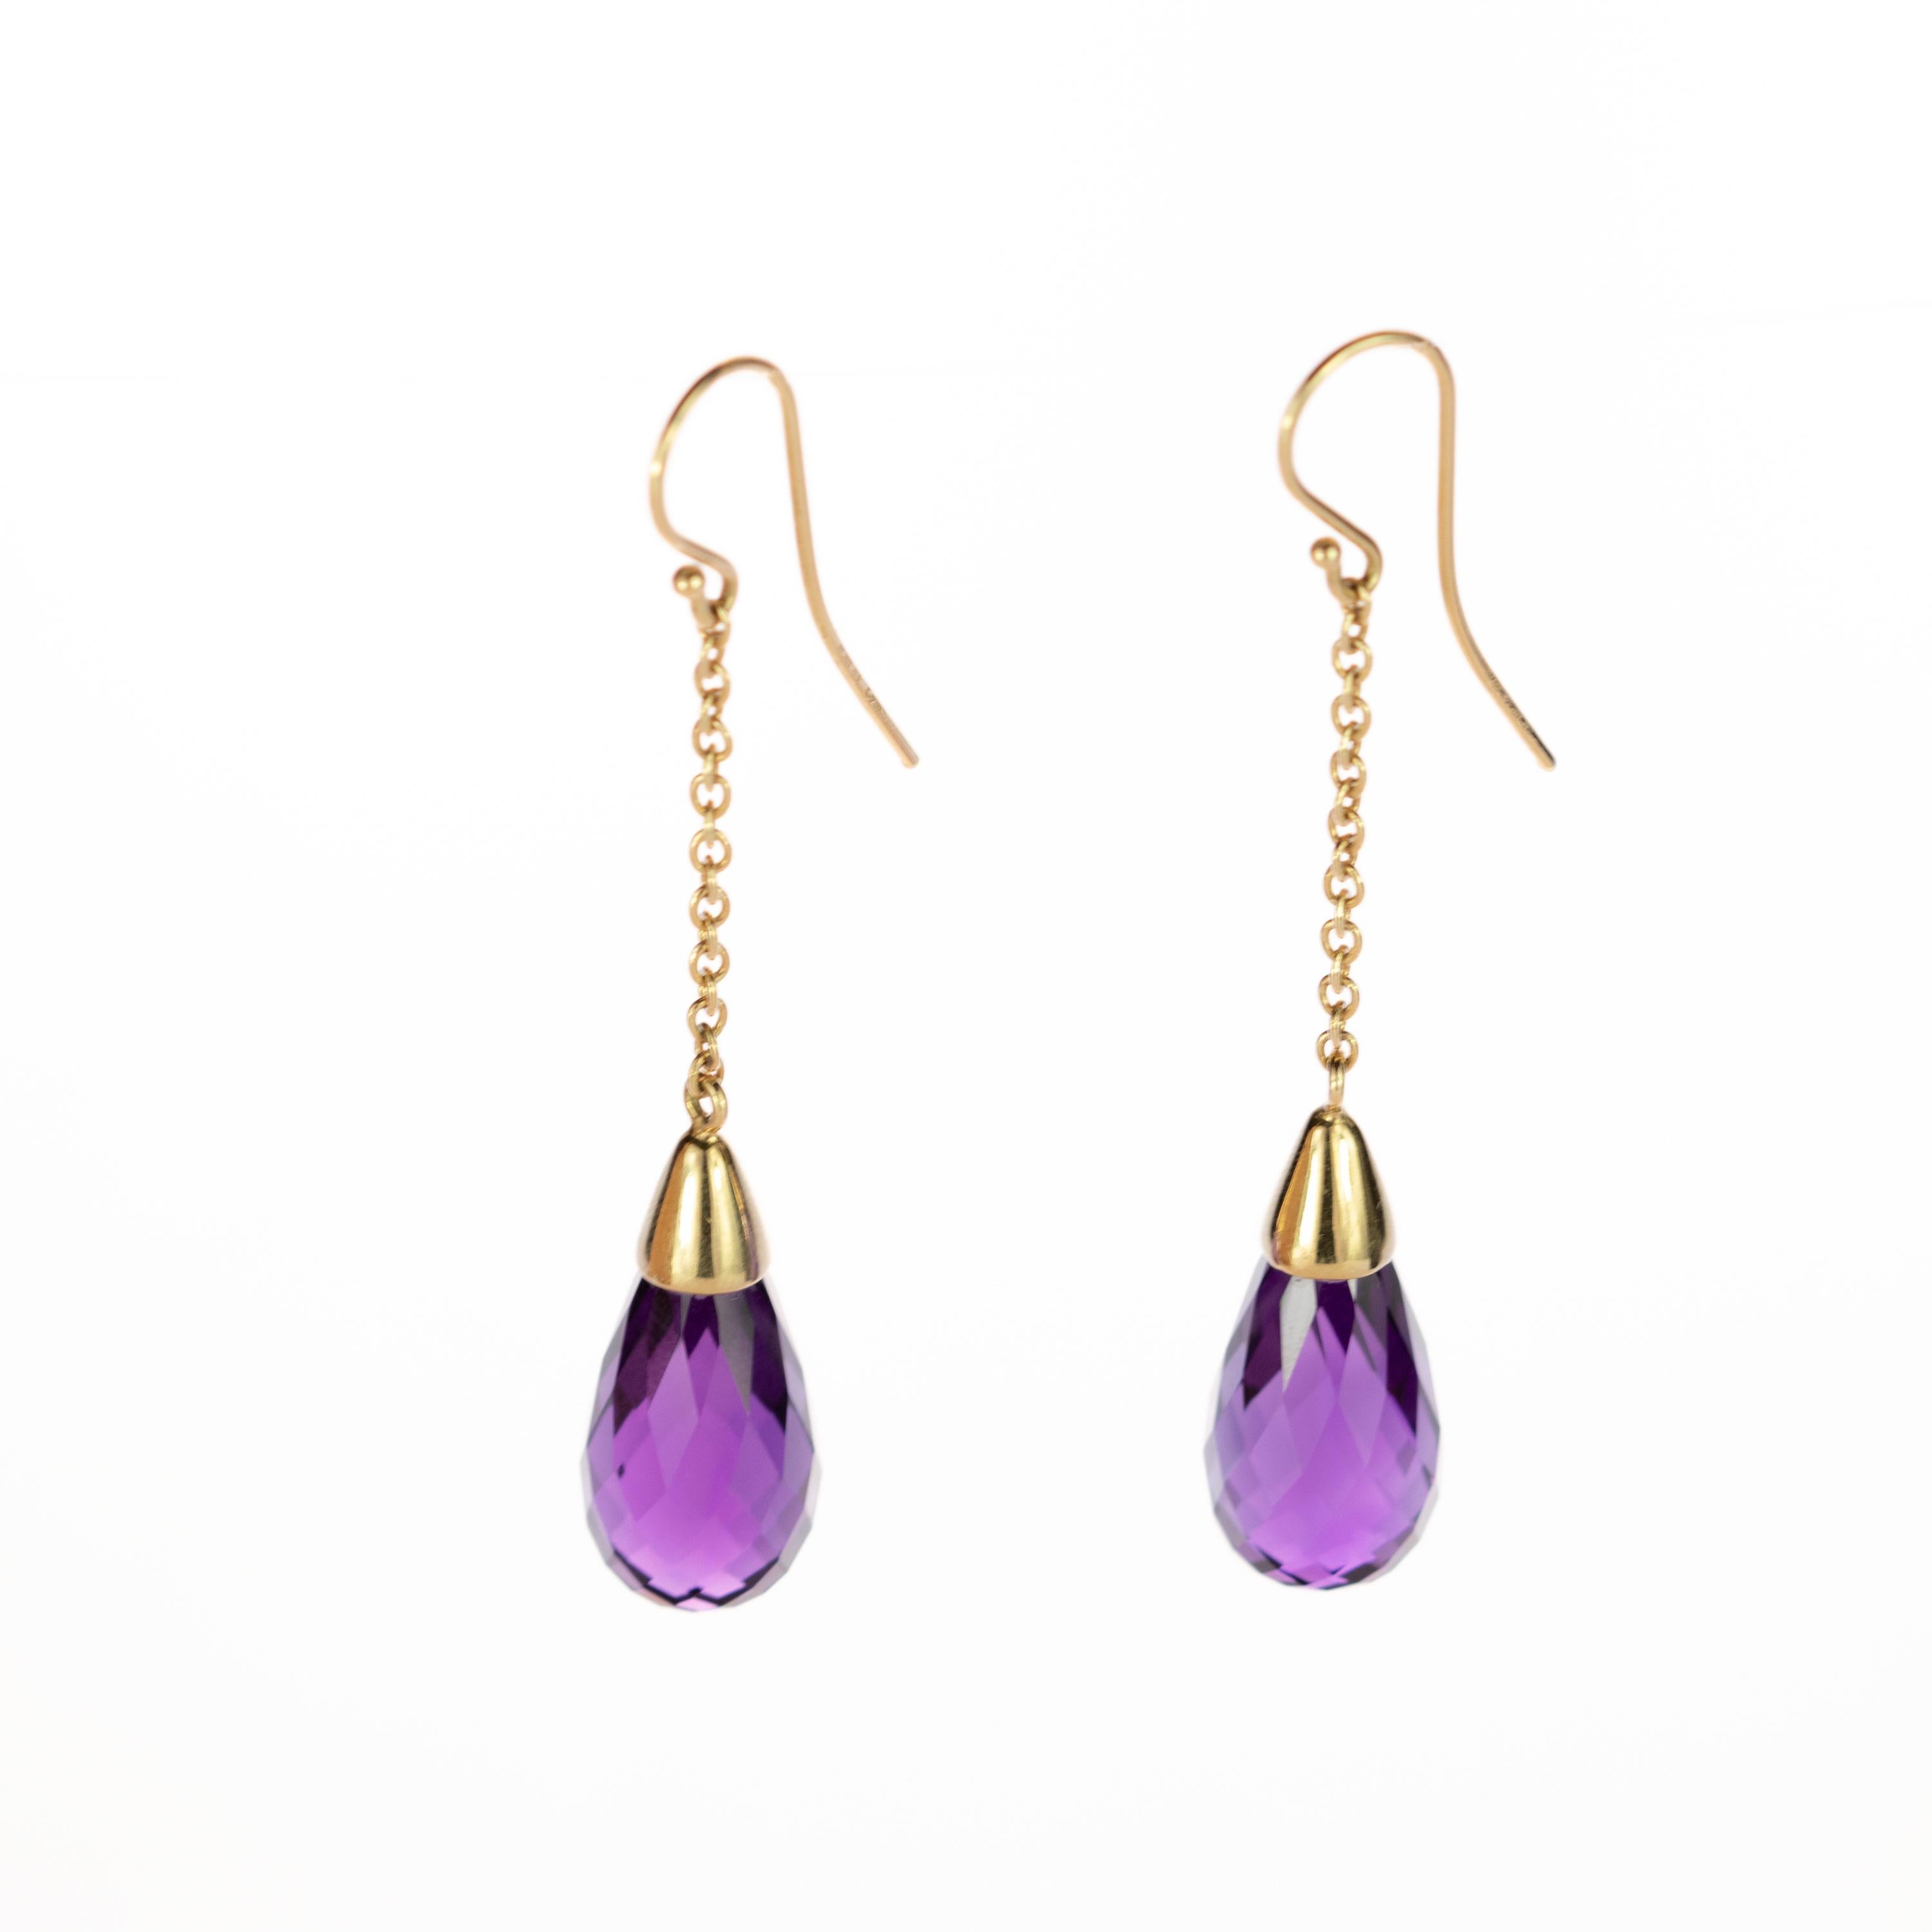 Briolette Cut 18 Karat Gold Long Chain Pendulum Purple Amethyst Briolette Handmade Earrings